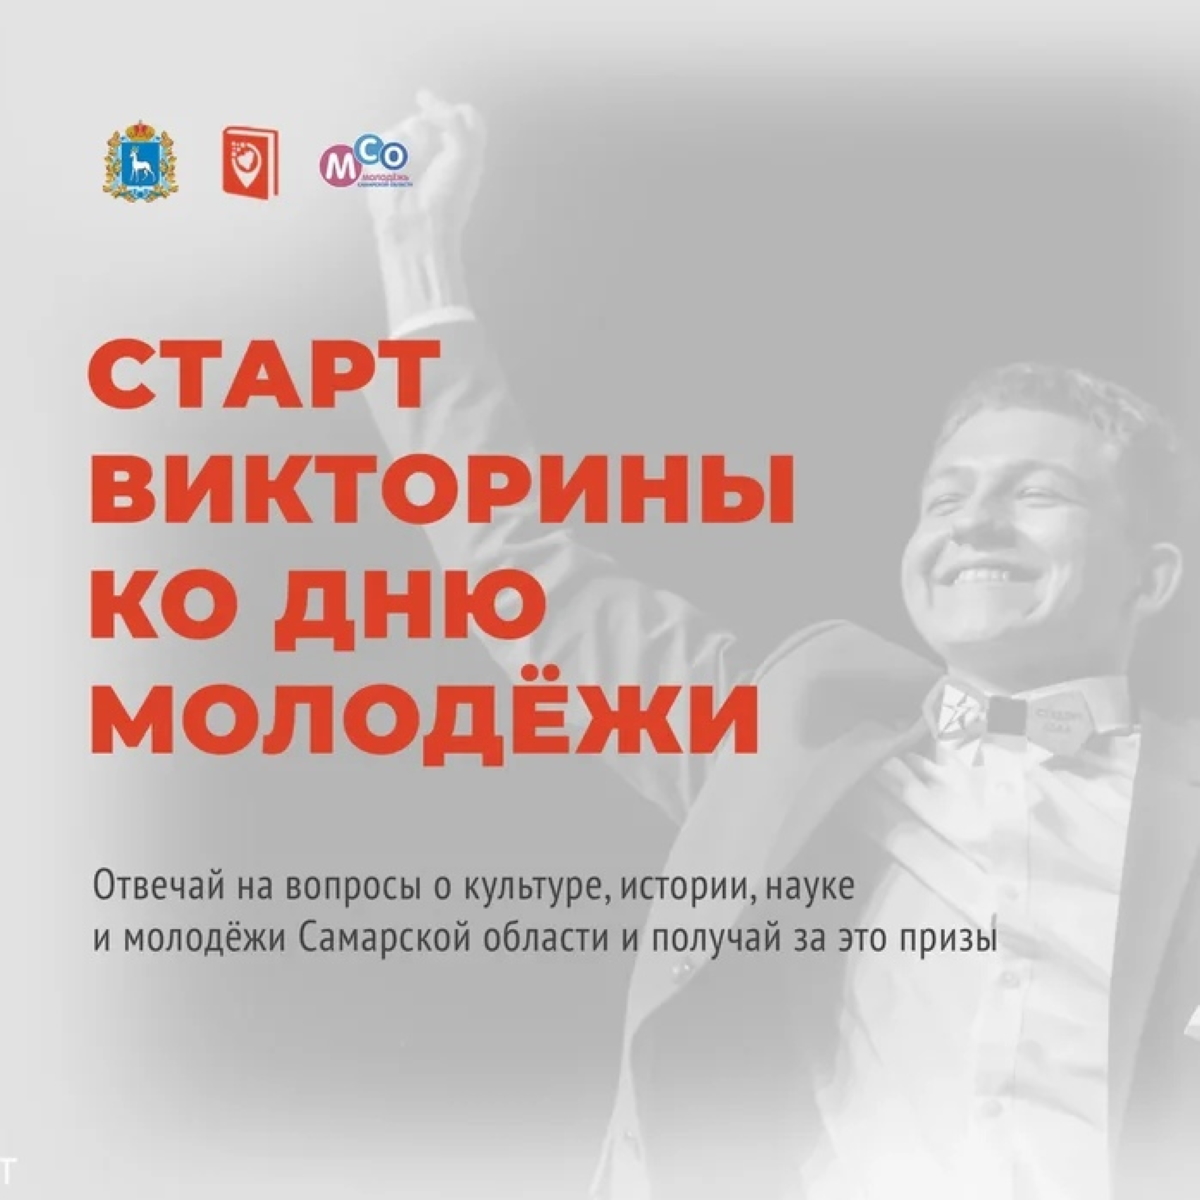 В Самарской области проходит познавательная викторина, посвящённая Дню молодёжи